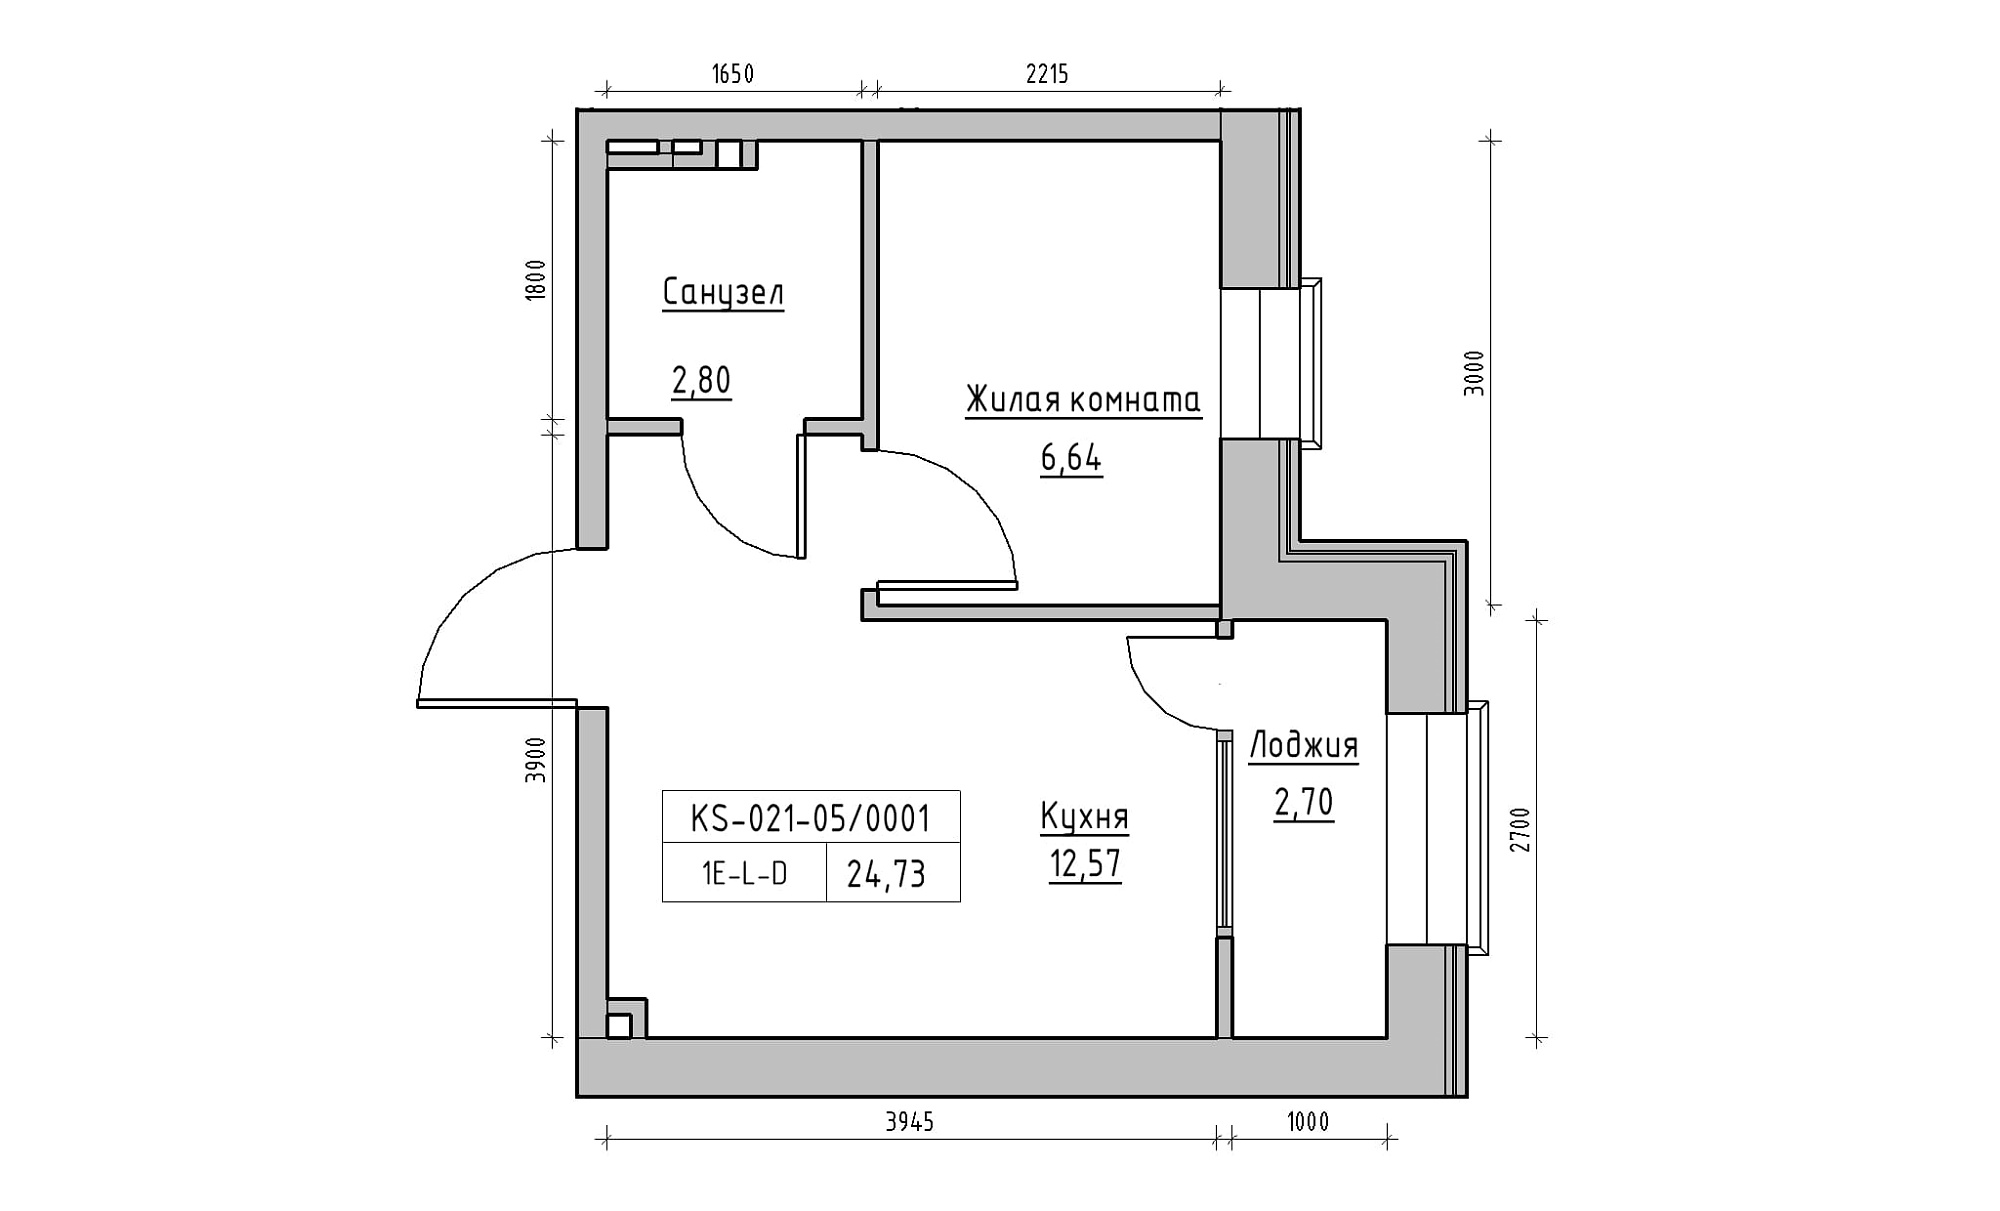 Планировка 1-к квартира площей 24.73м2, KS-021-05/0001.